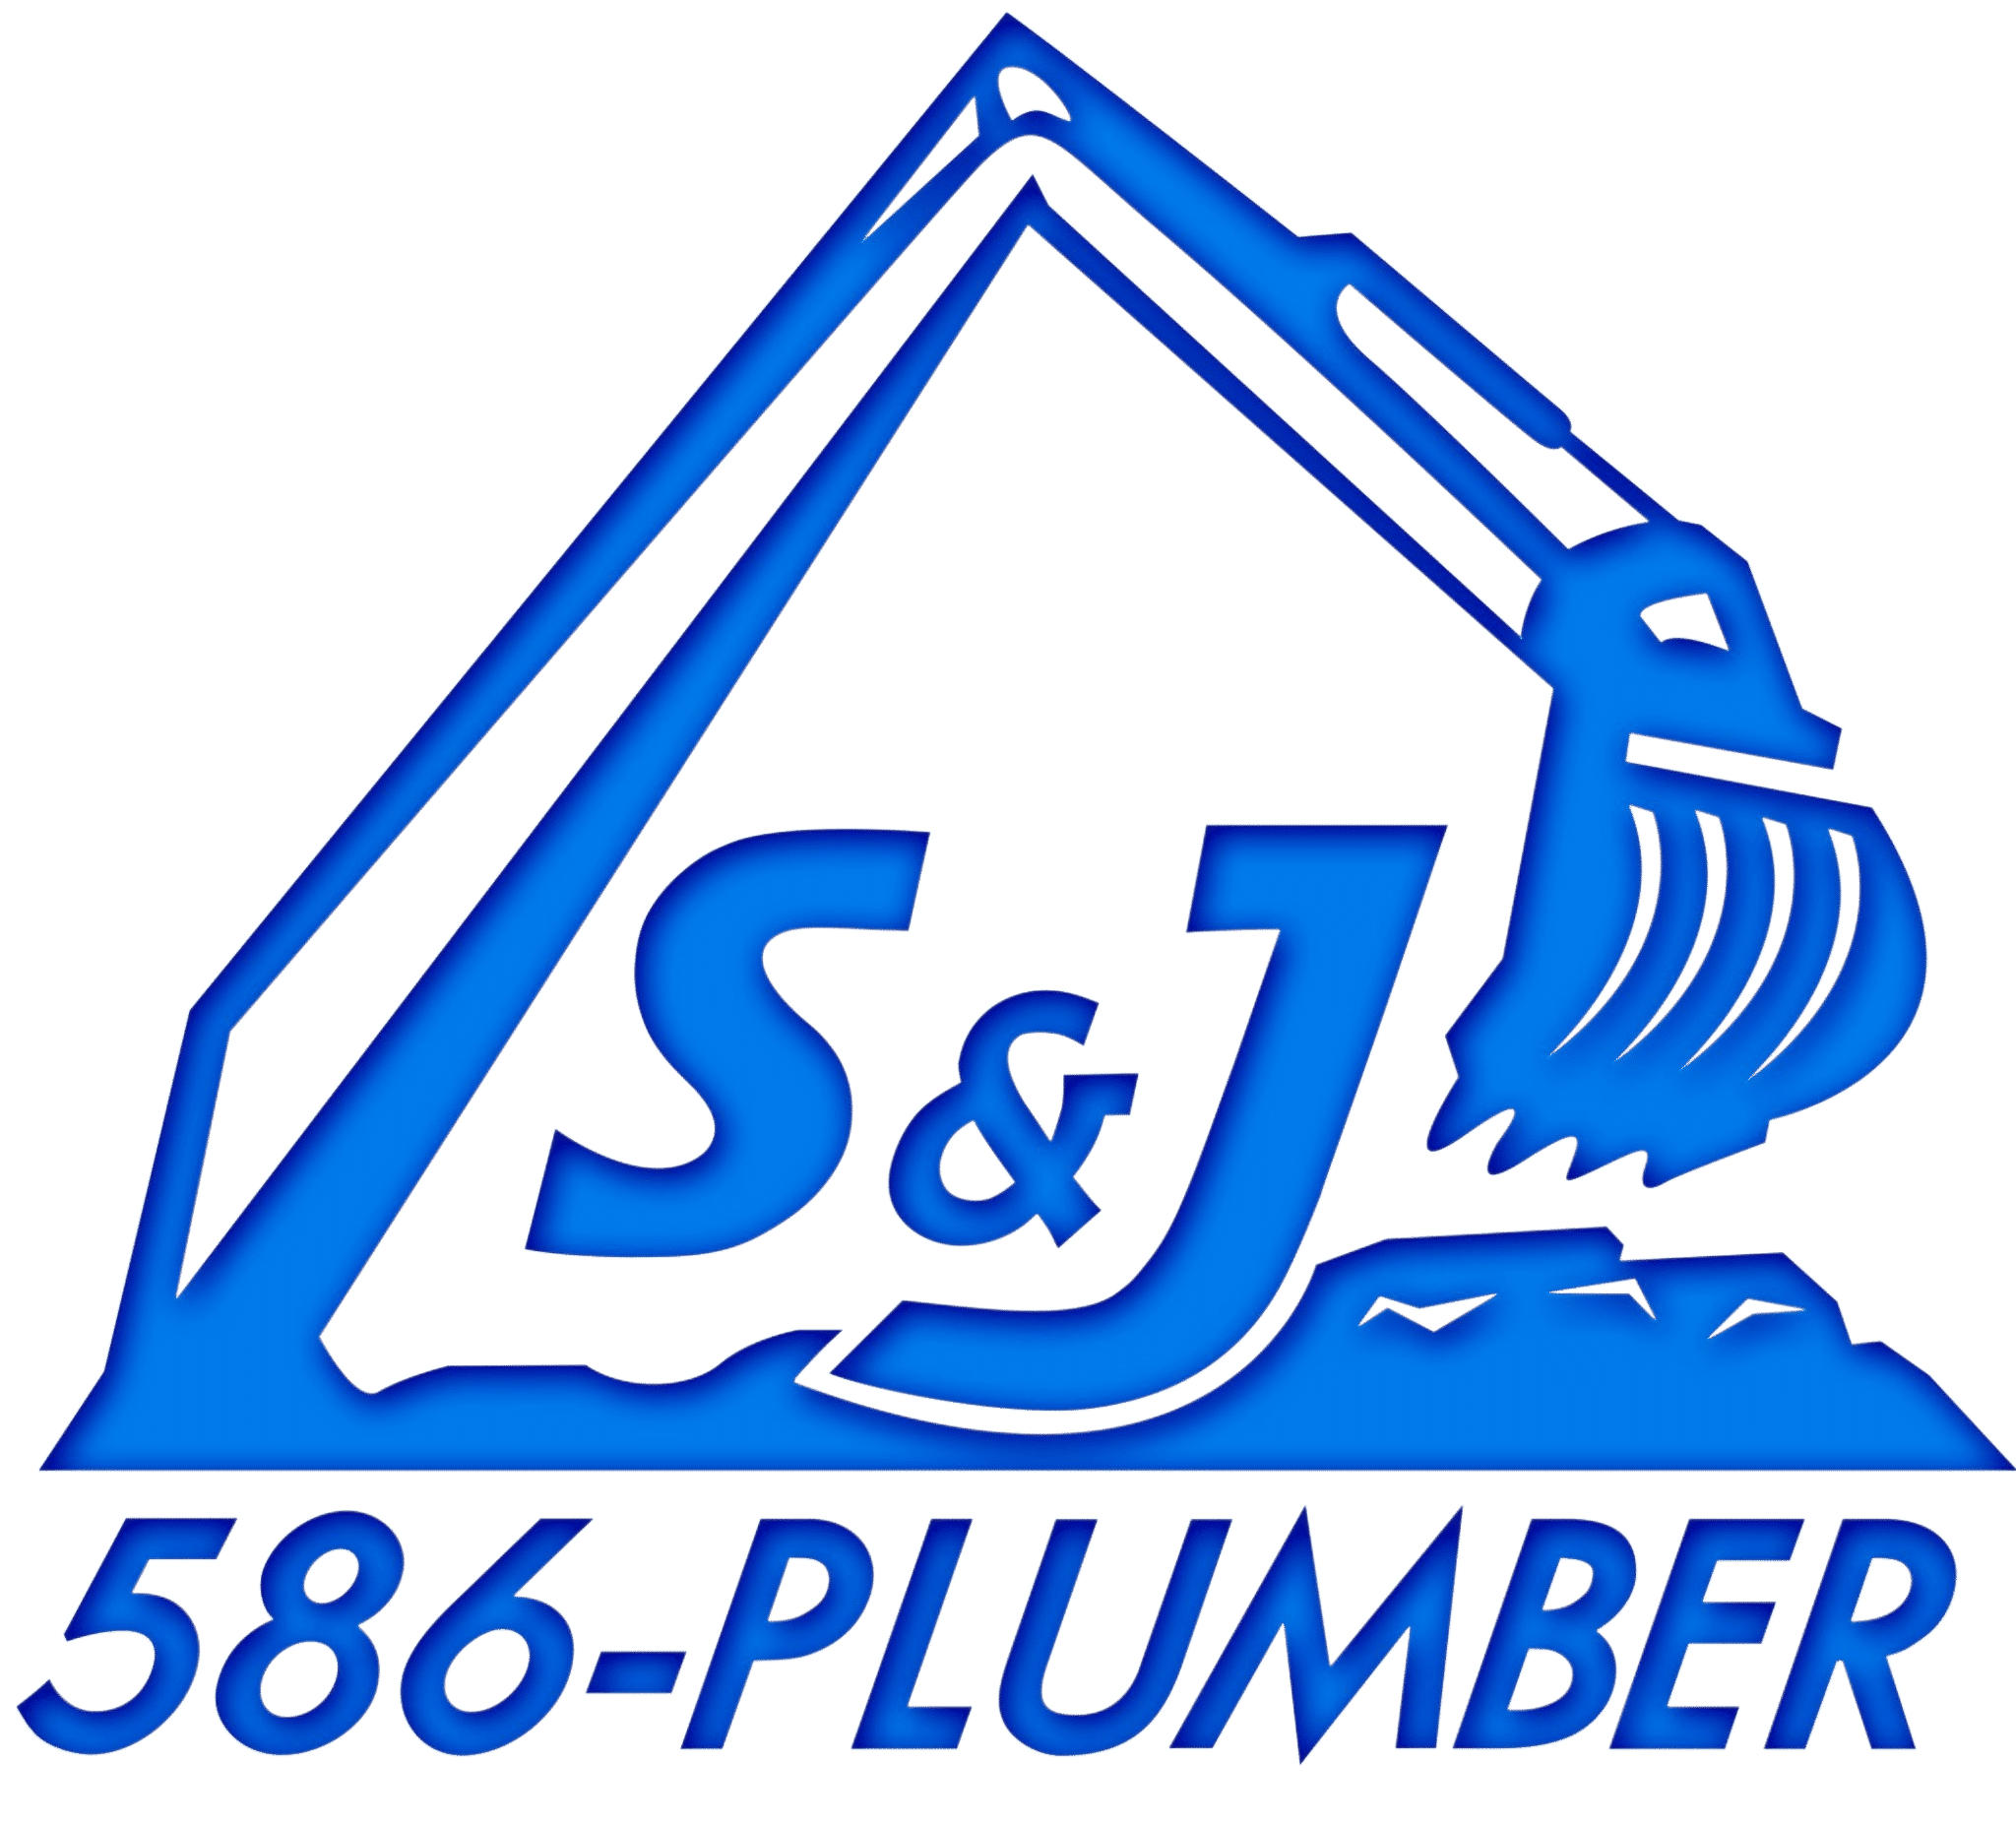 Plumbing Organization Plumber Maryland, Plumbing, text, logo png | PNGEgg